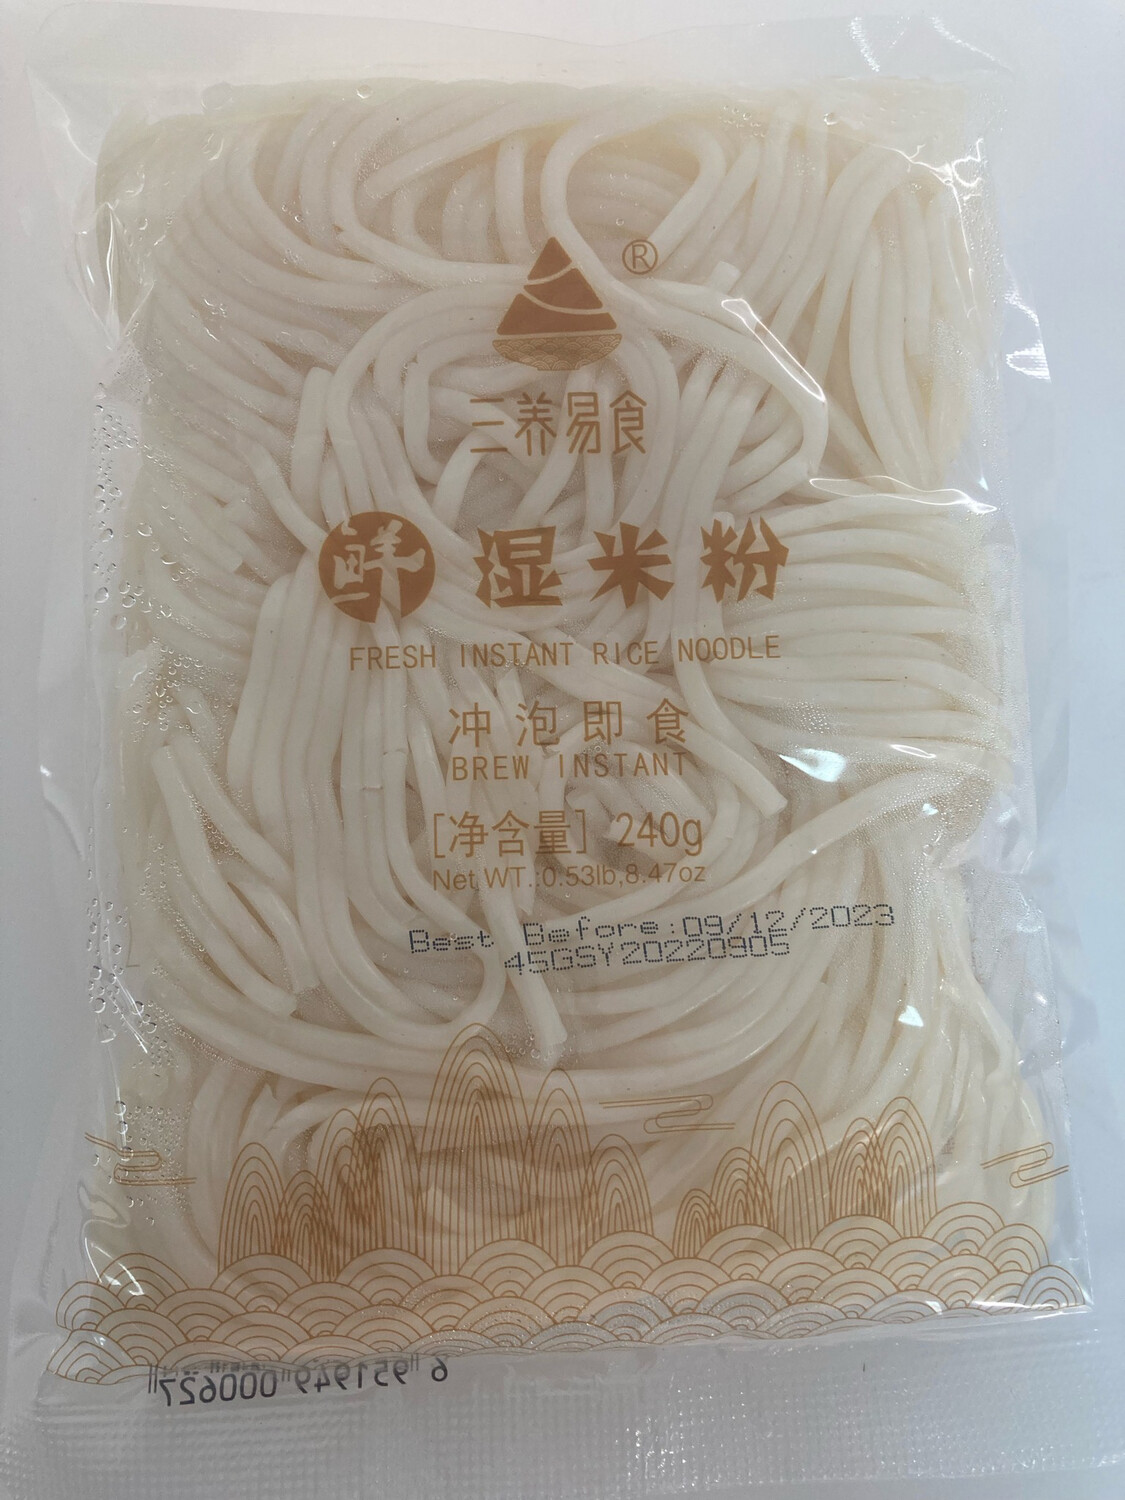 三养易食 Fresh Instant Rice Noodle 桂林鲜湿米粉 240g